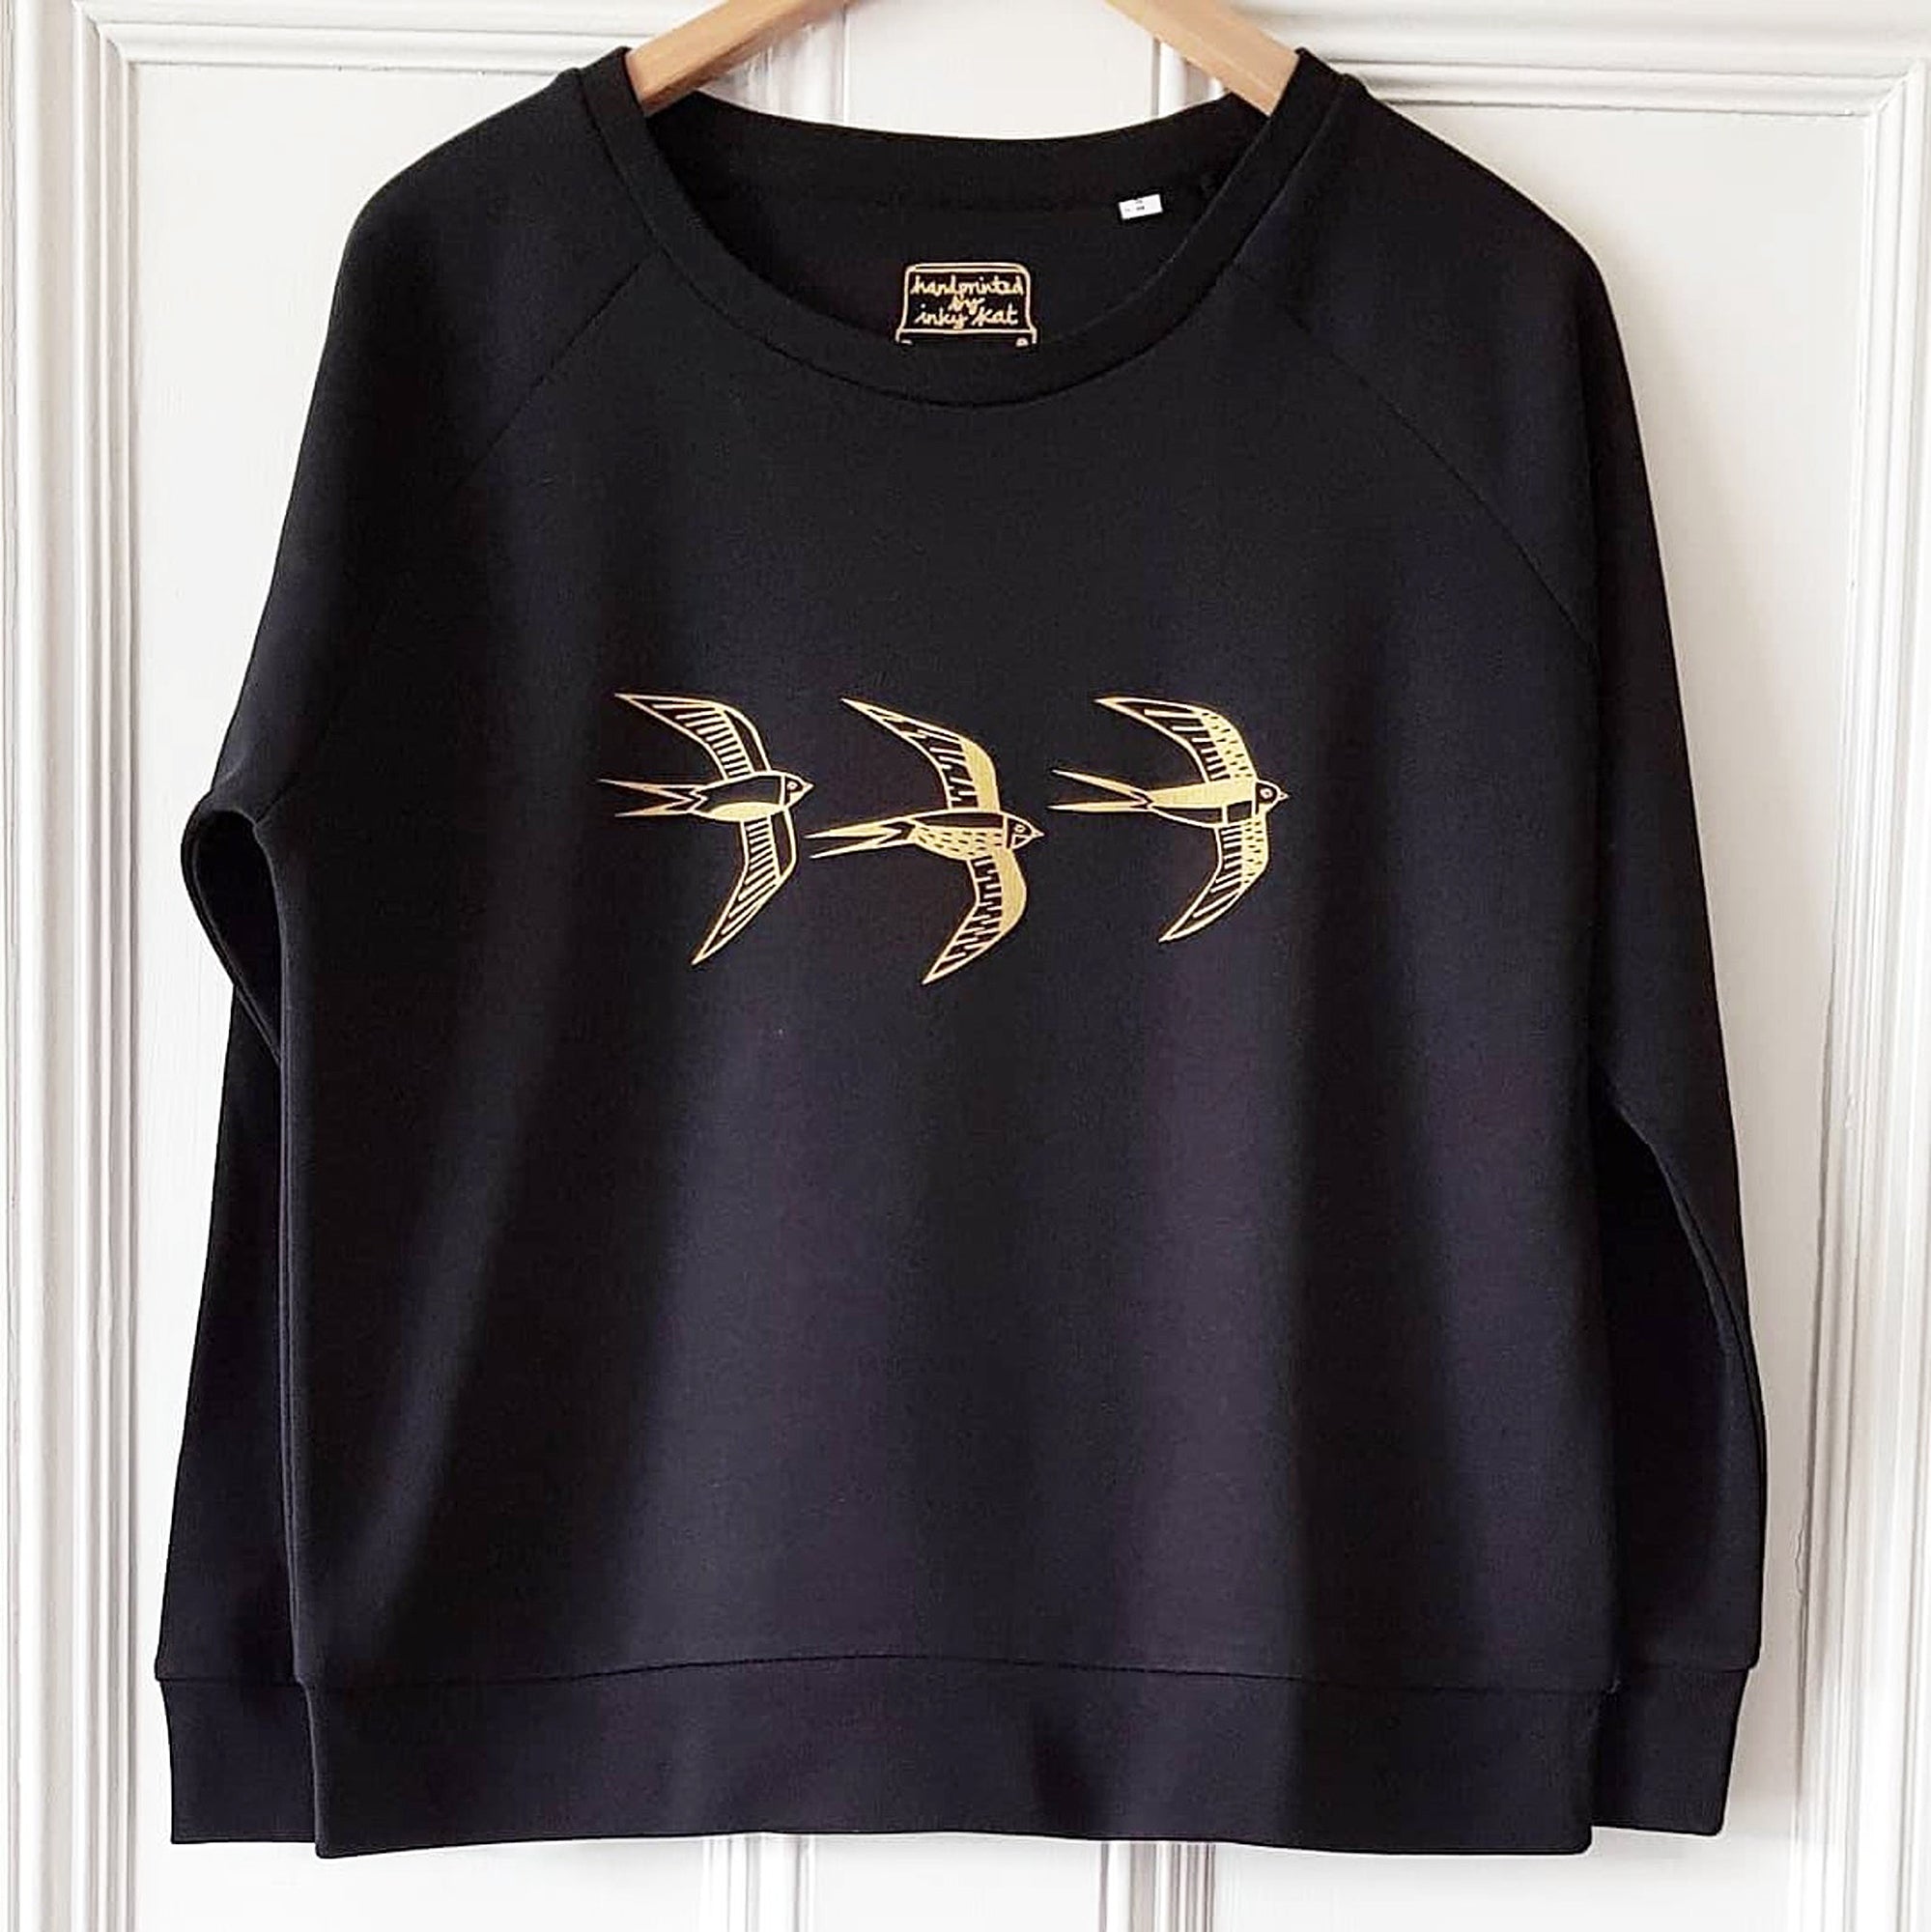 Swallow design ladies sweatshirt